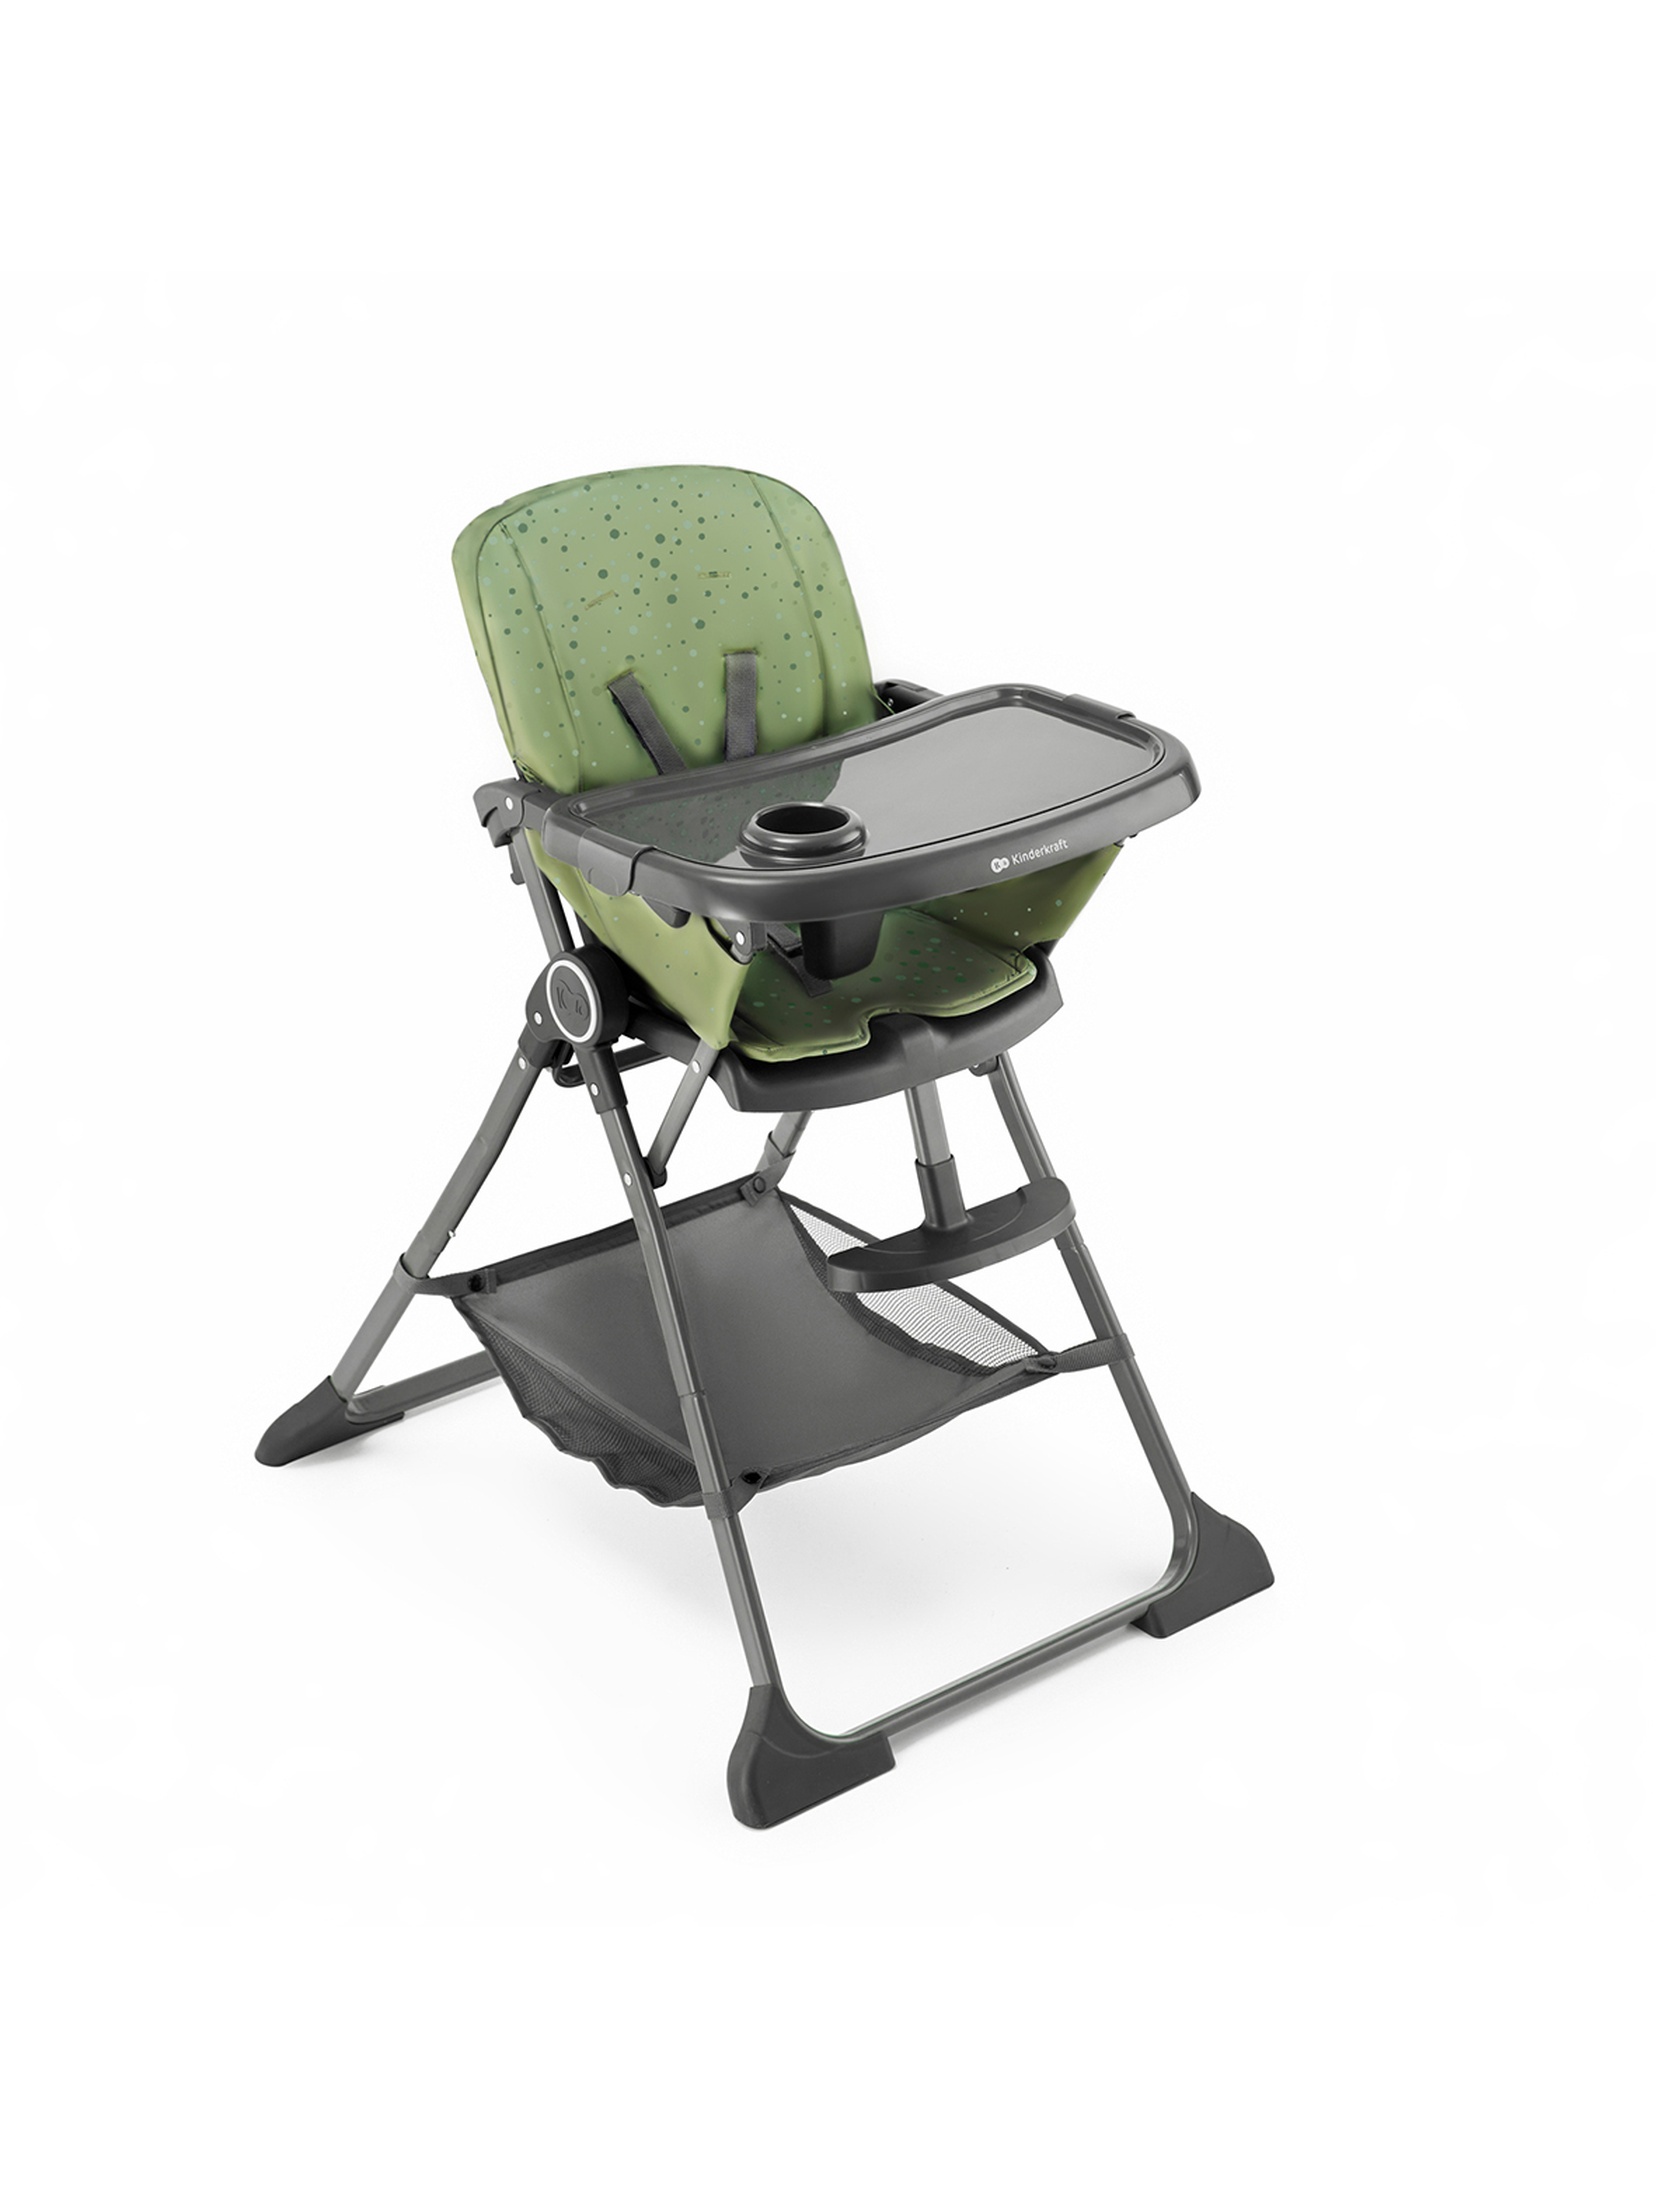 Krzesełko do karmienia składane FOLDEE Kinderkraft - green